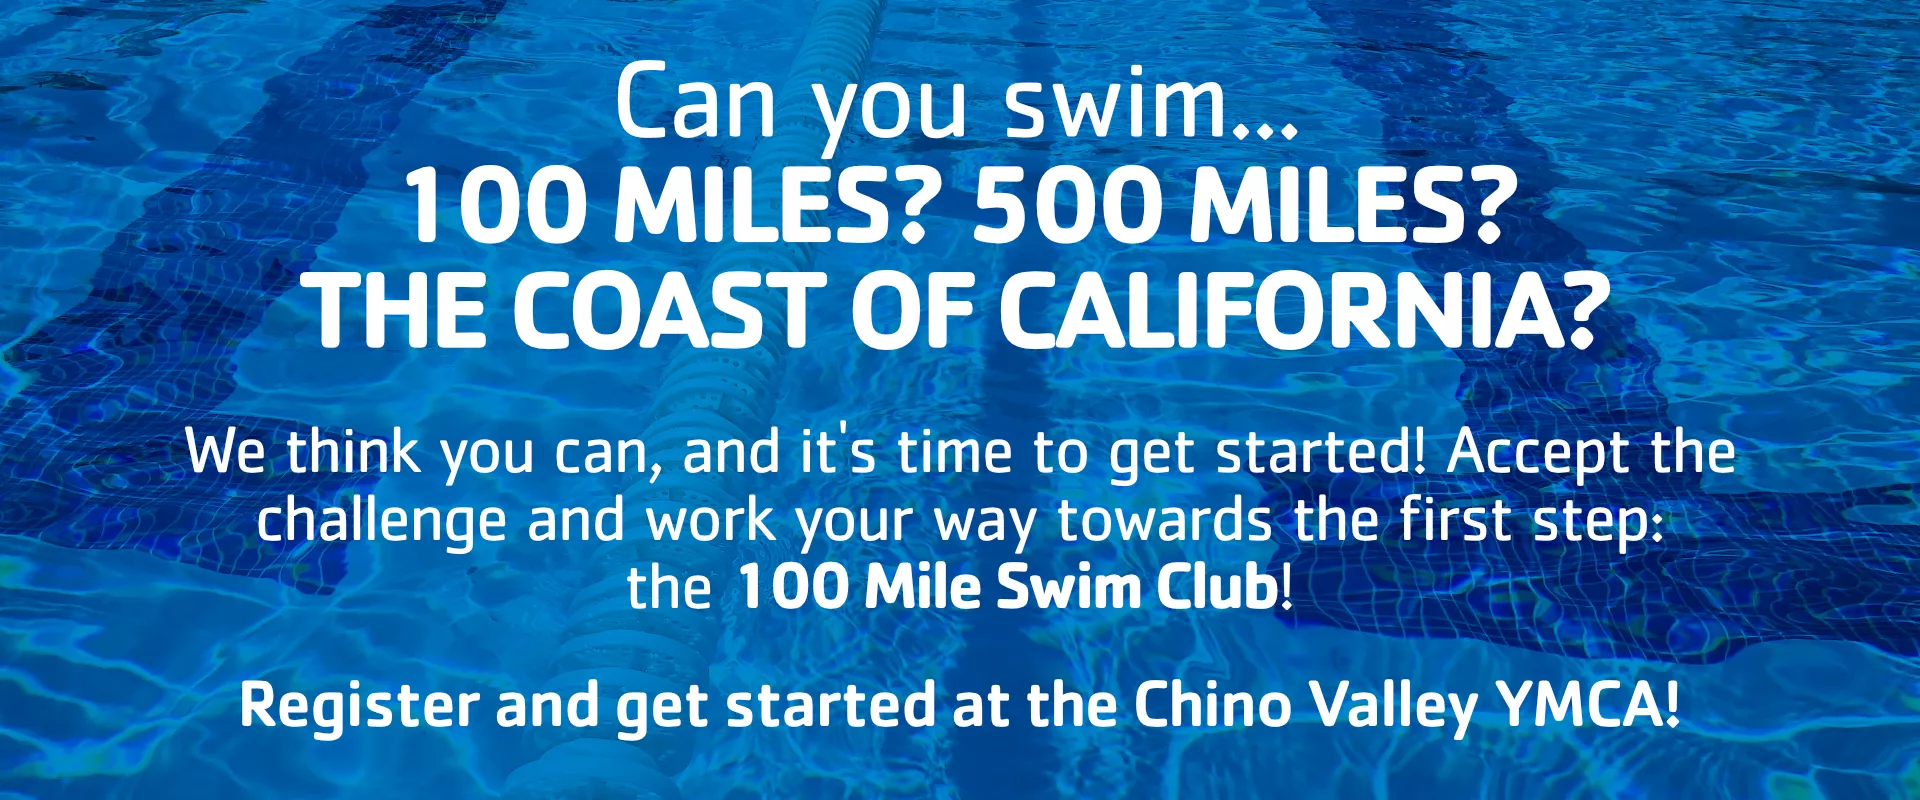 100 Mile Swim Club